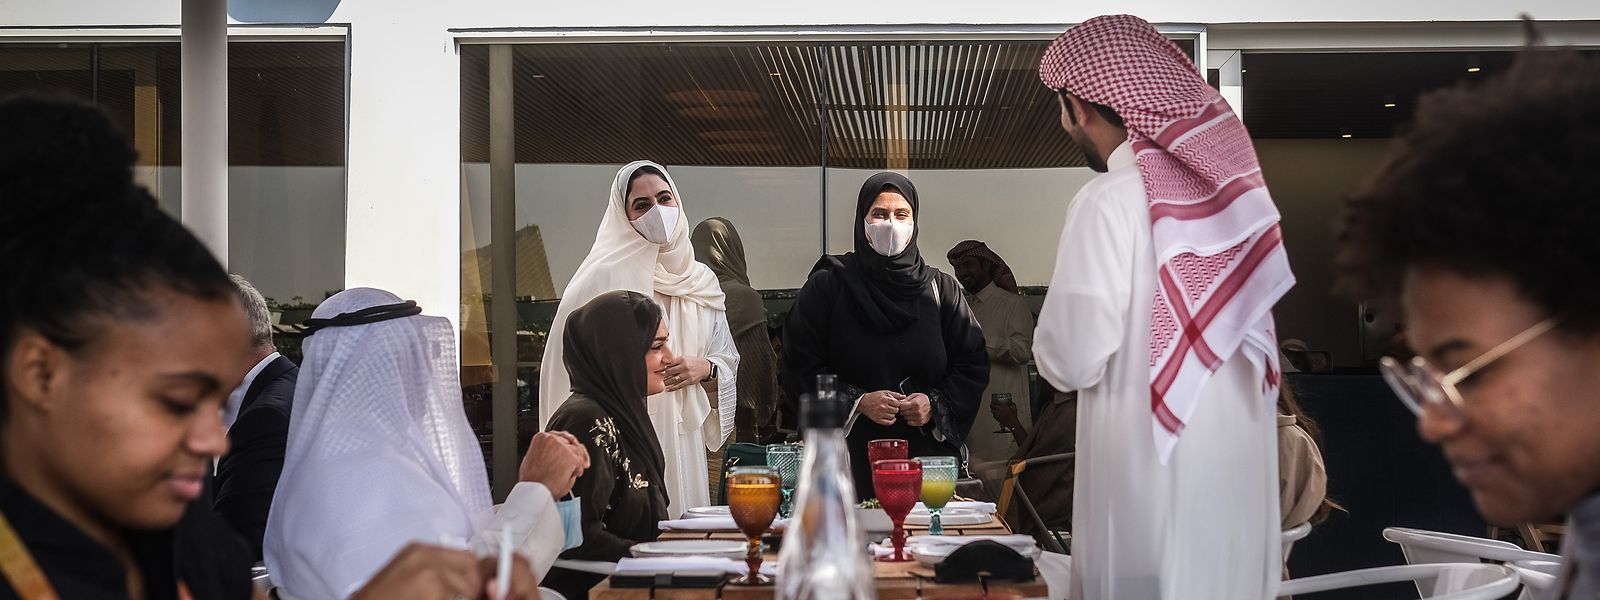 Visitantes almoçam no restaurante "Al Lusitano" no Pavilhão de Portugal, Dubai, Emirados Árabes Unidos.